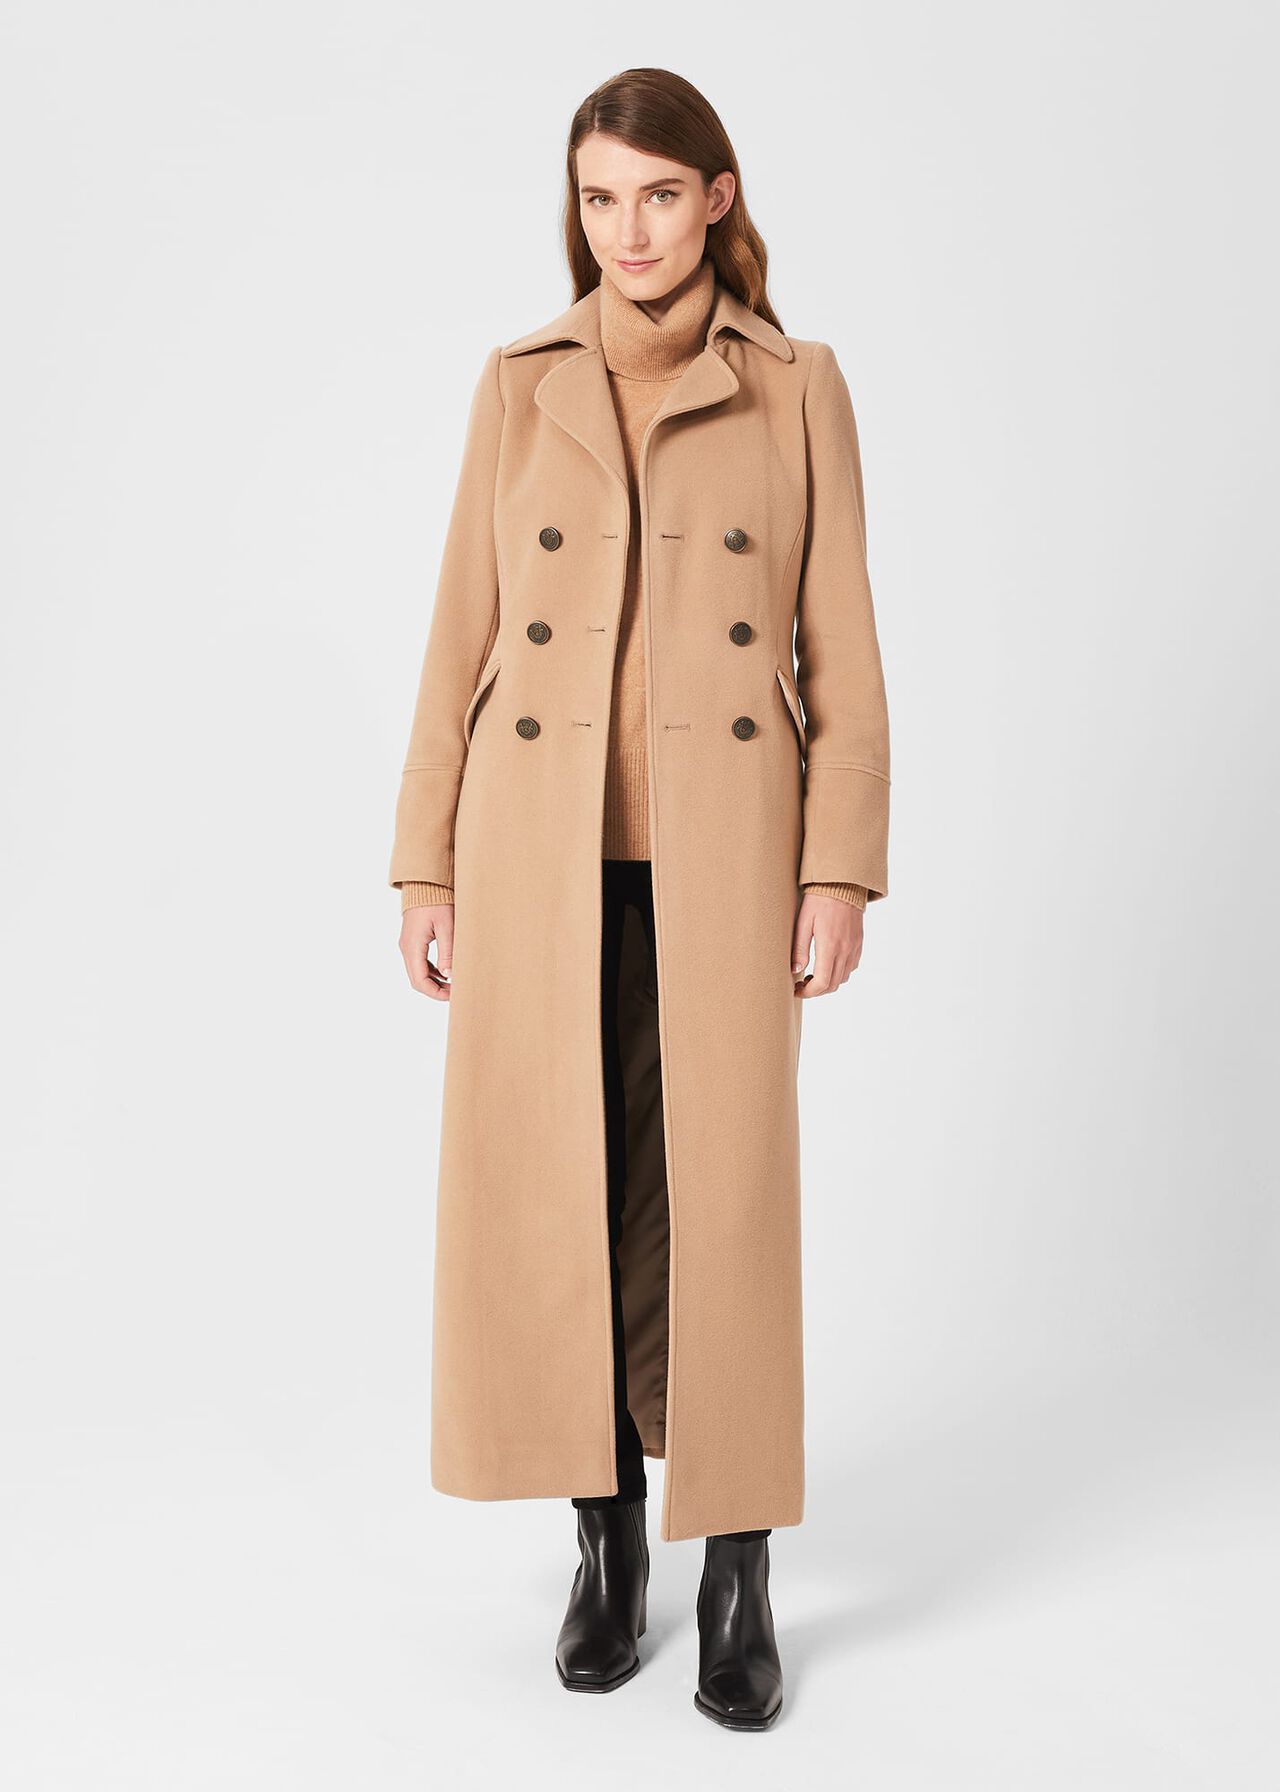 Brenna Wool Blend Maxi Coat, Camel, hi-res